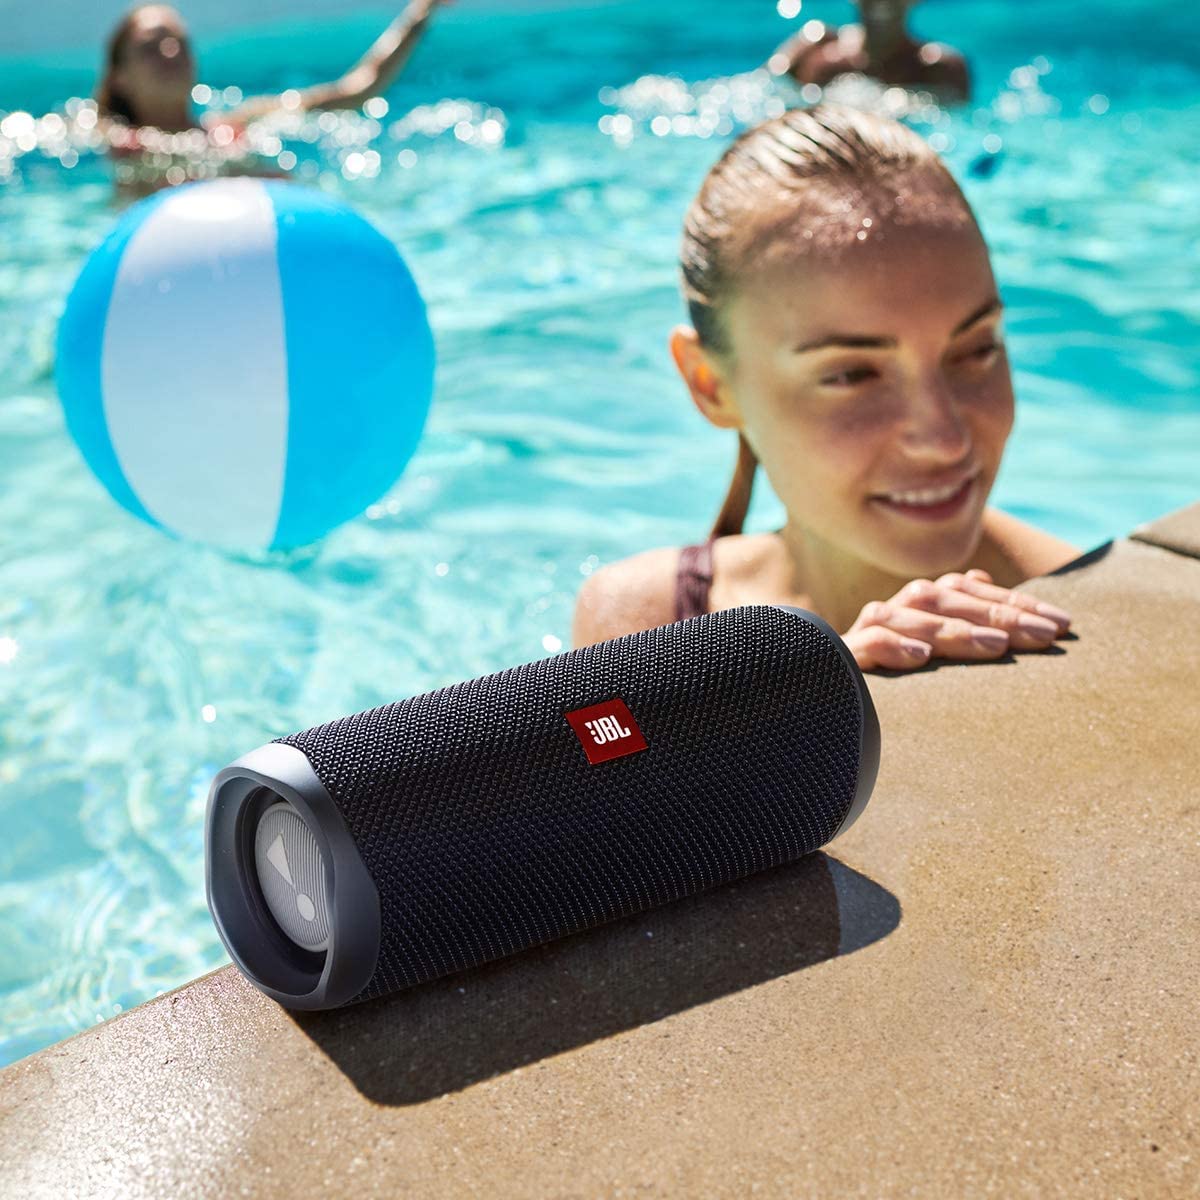 JBL Flip 5: Portable Wireless Bluetooth Speaker, IPX7 Waterproof - Pink